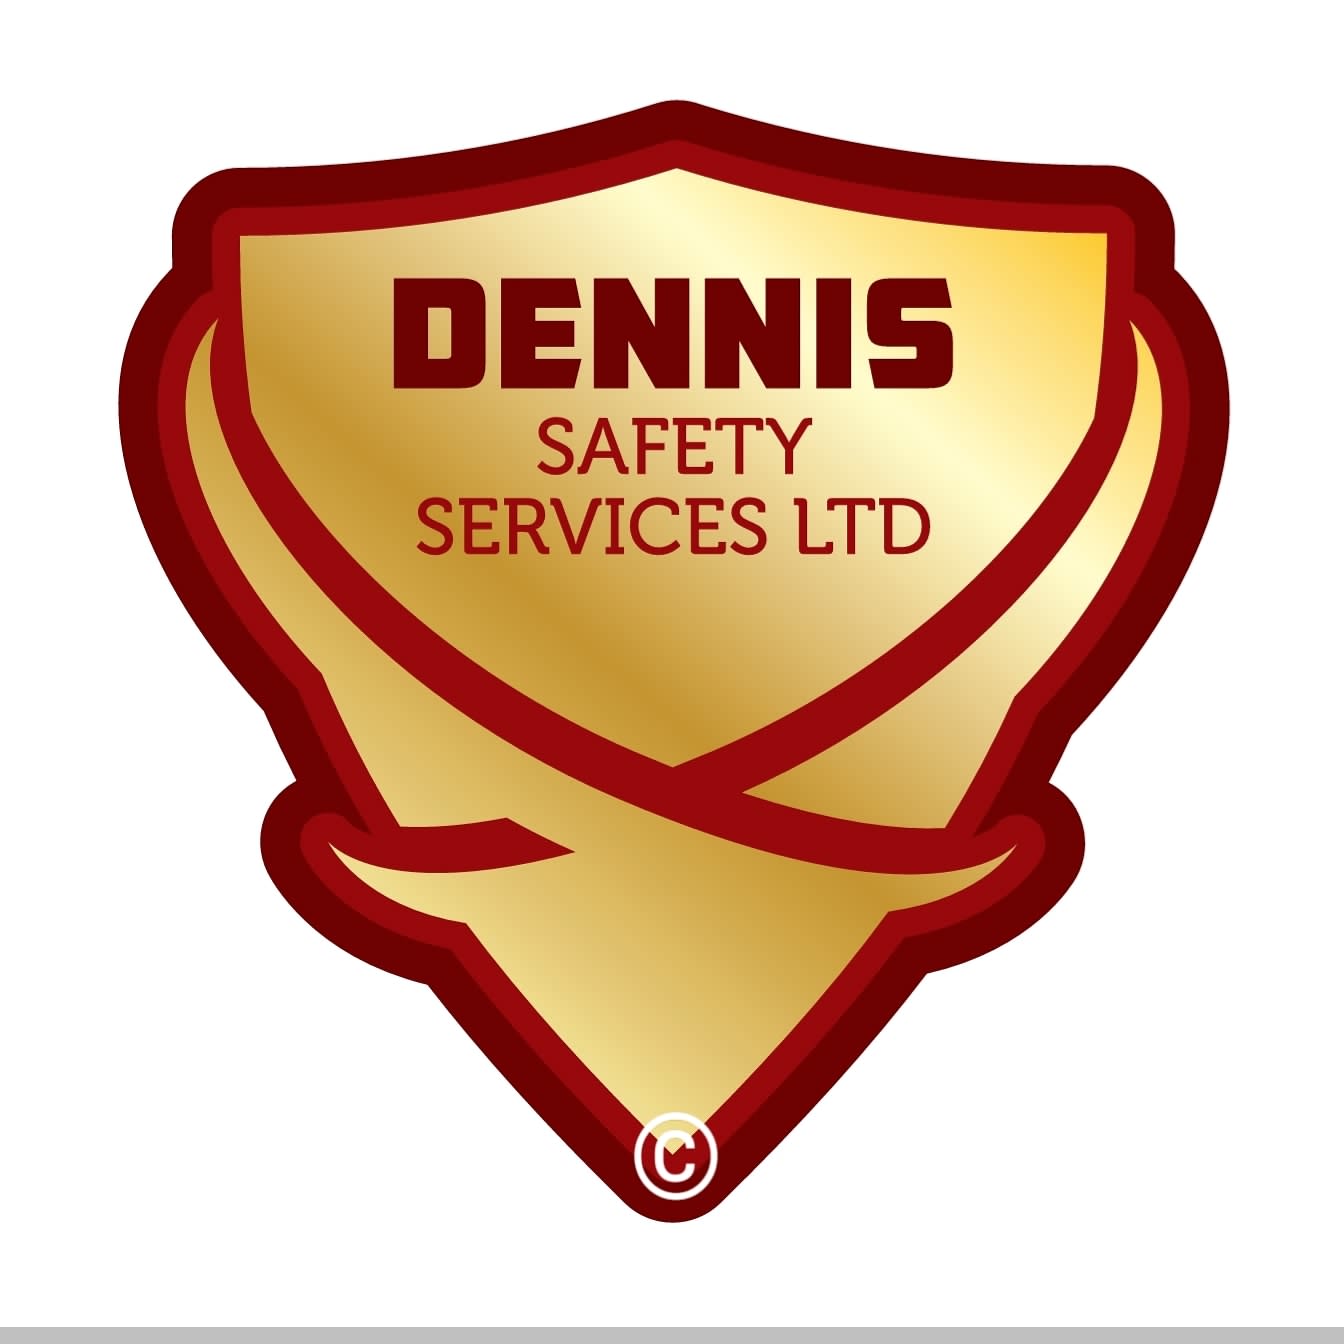 Dennis Safety Services